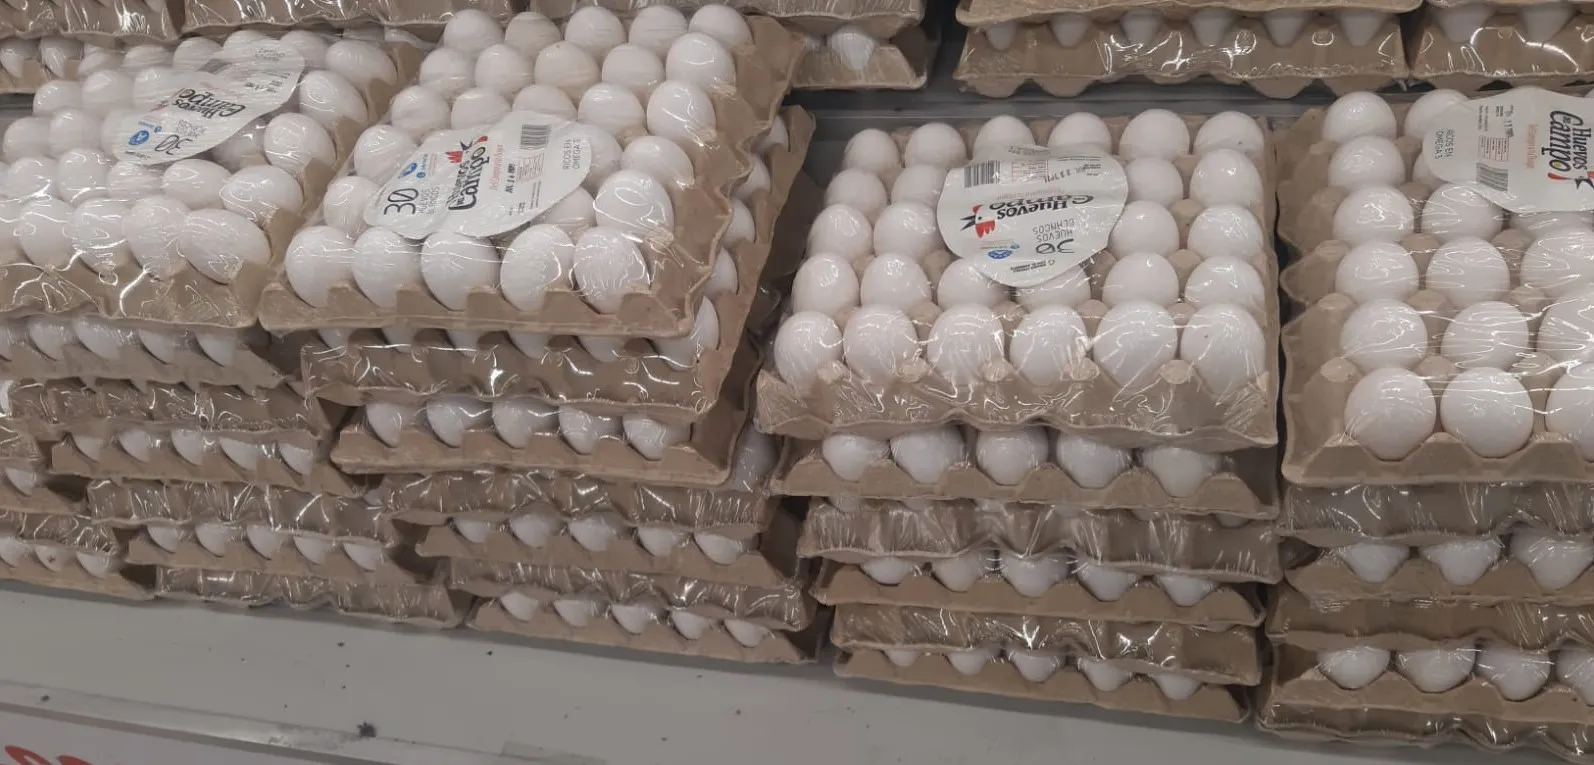 Gobierno suspende exportación de huevos hacia Haití; productores rechazan medida